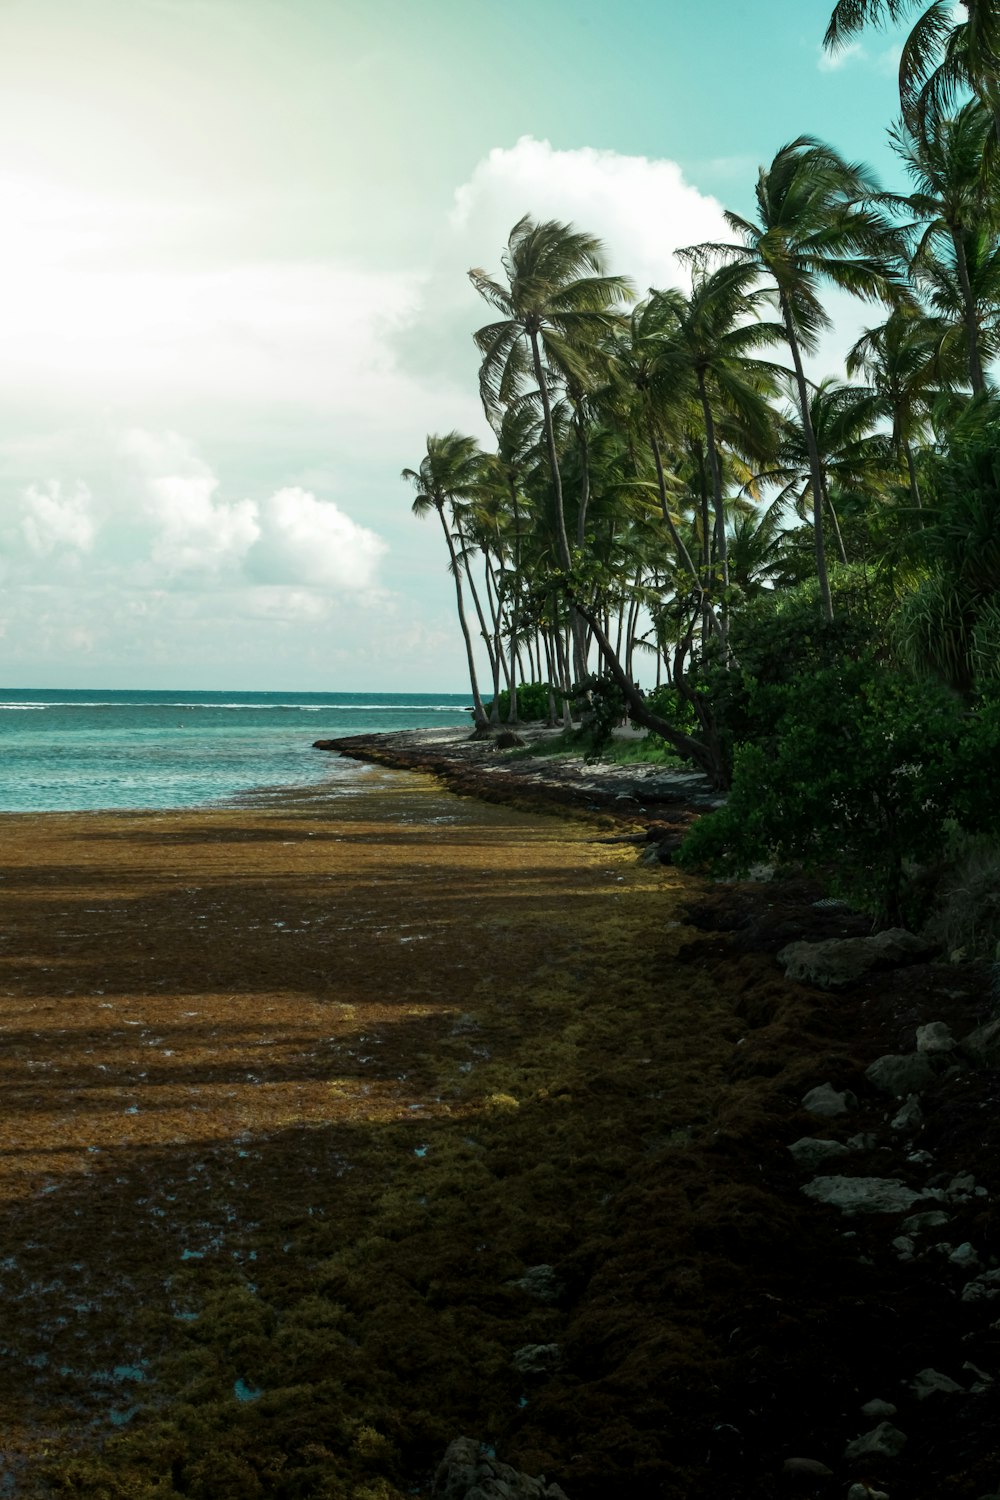 una playa de arena con palmeras y un cuerpo de agua